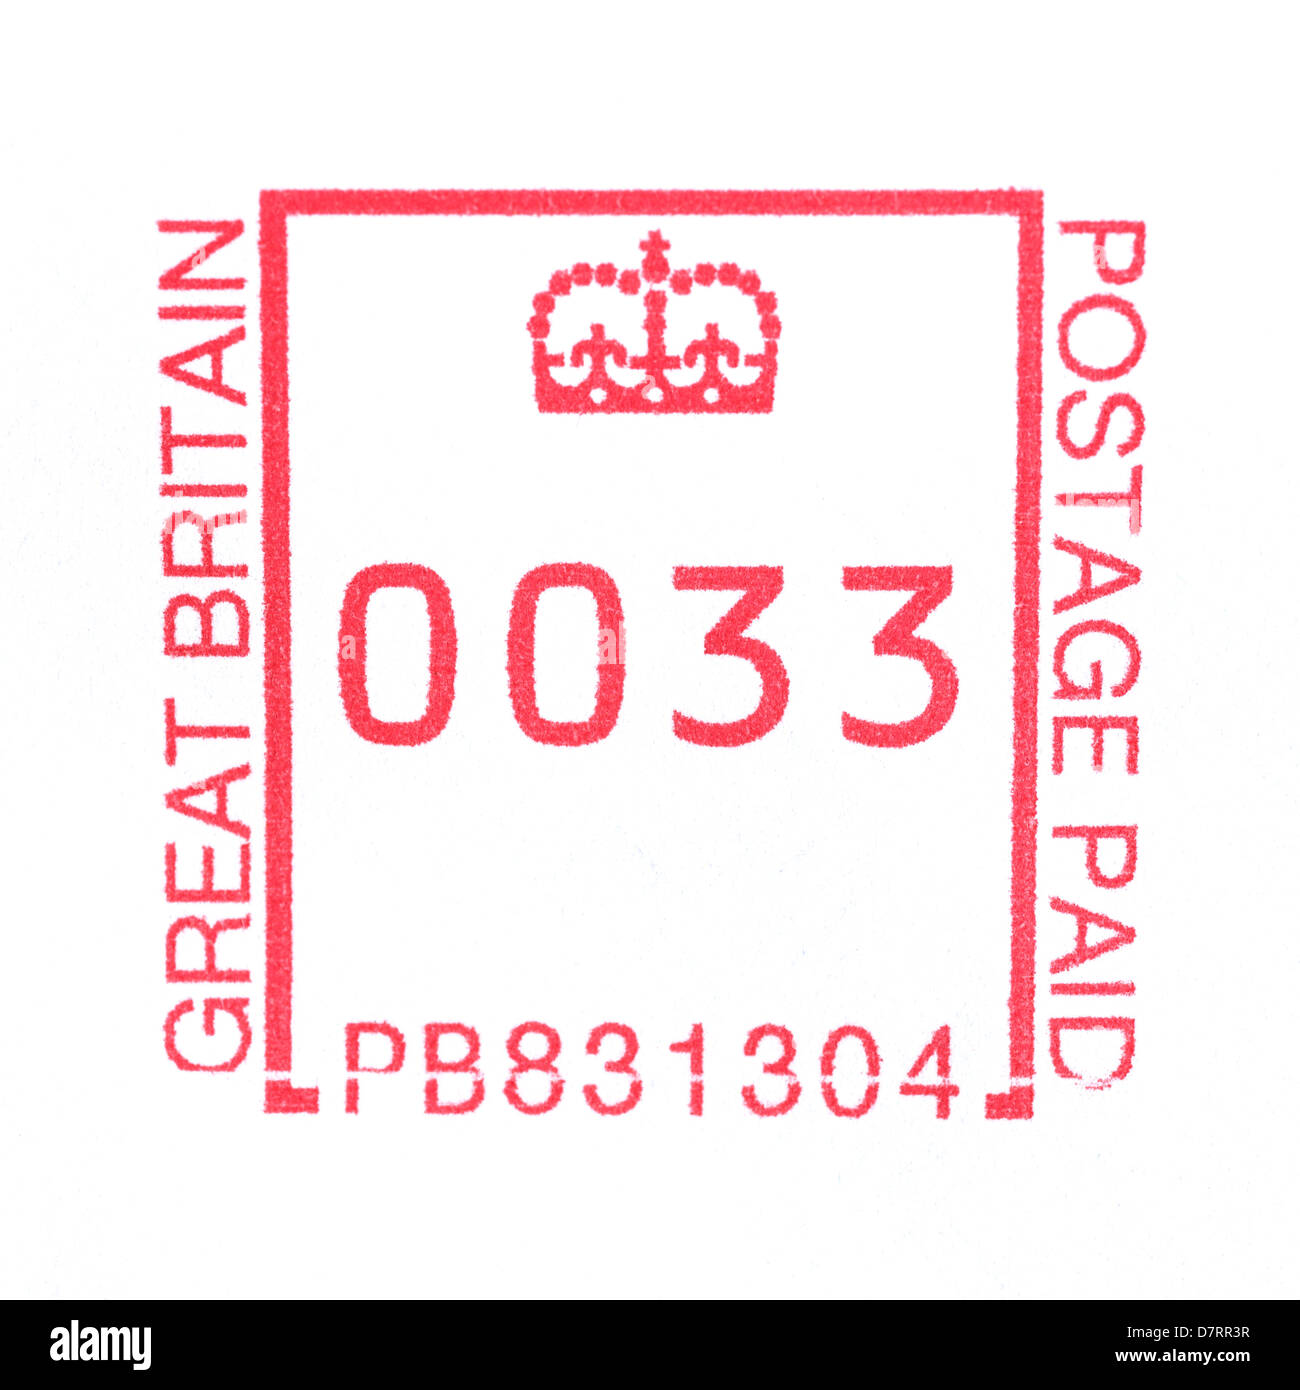 Un sello hecho por una máquina de franqueo postal de Royal Mail mostrando 33 peniques franqueo Foto de stock